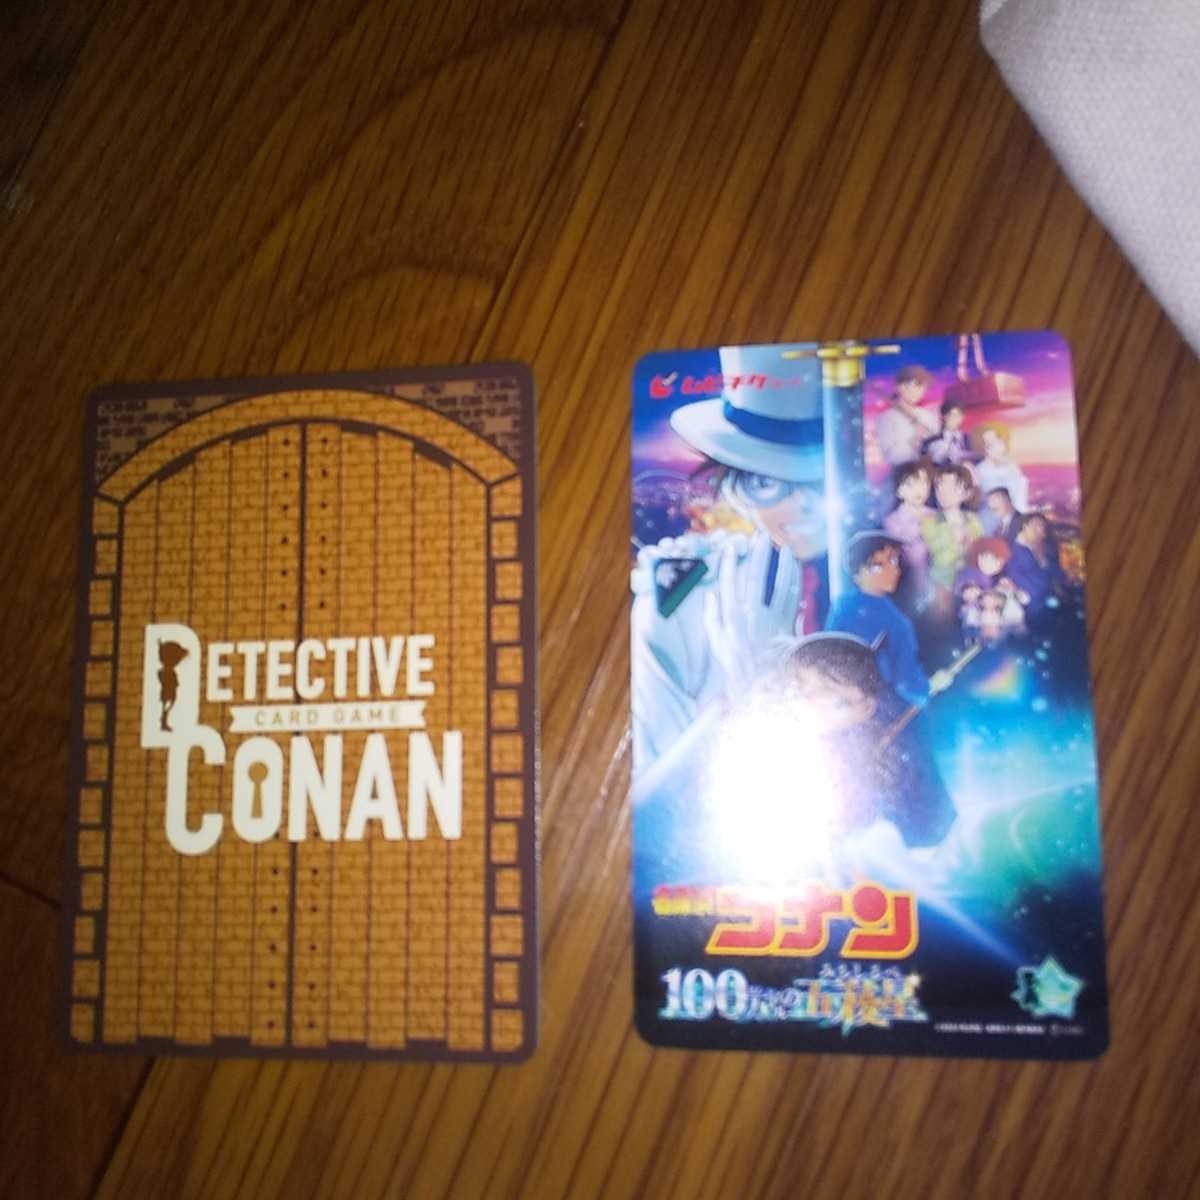  в общем фильм Detective Conan 100 десять тысяч доллар. ........ передний продажа талон театр версия mbichike оригинал прозрачный файл & ограничение карта передний . привилегия 